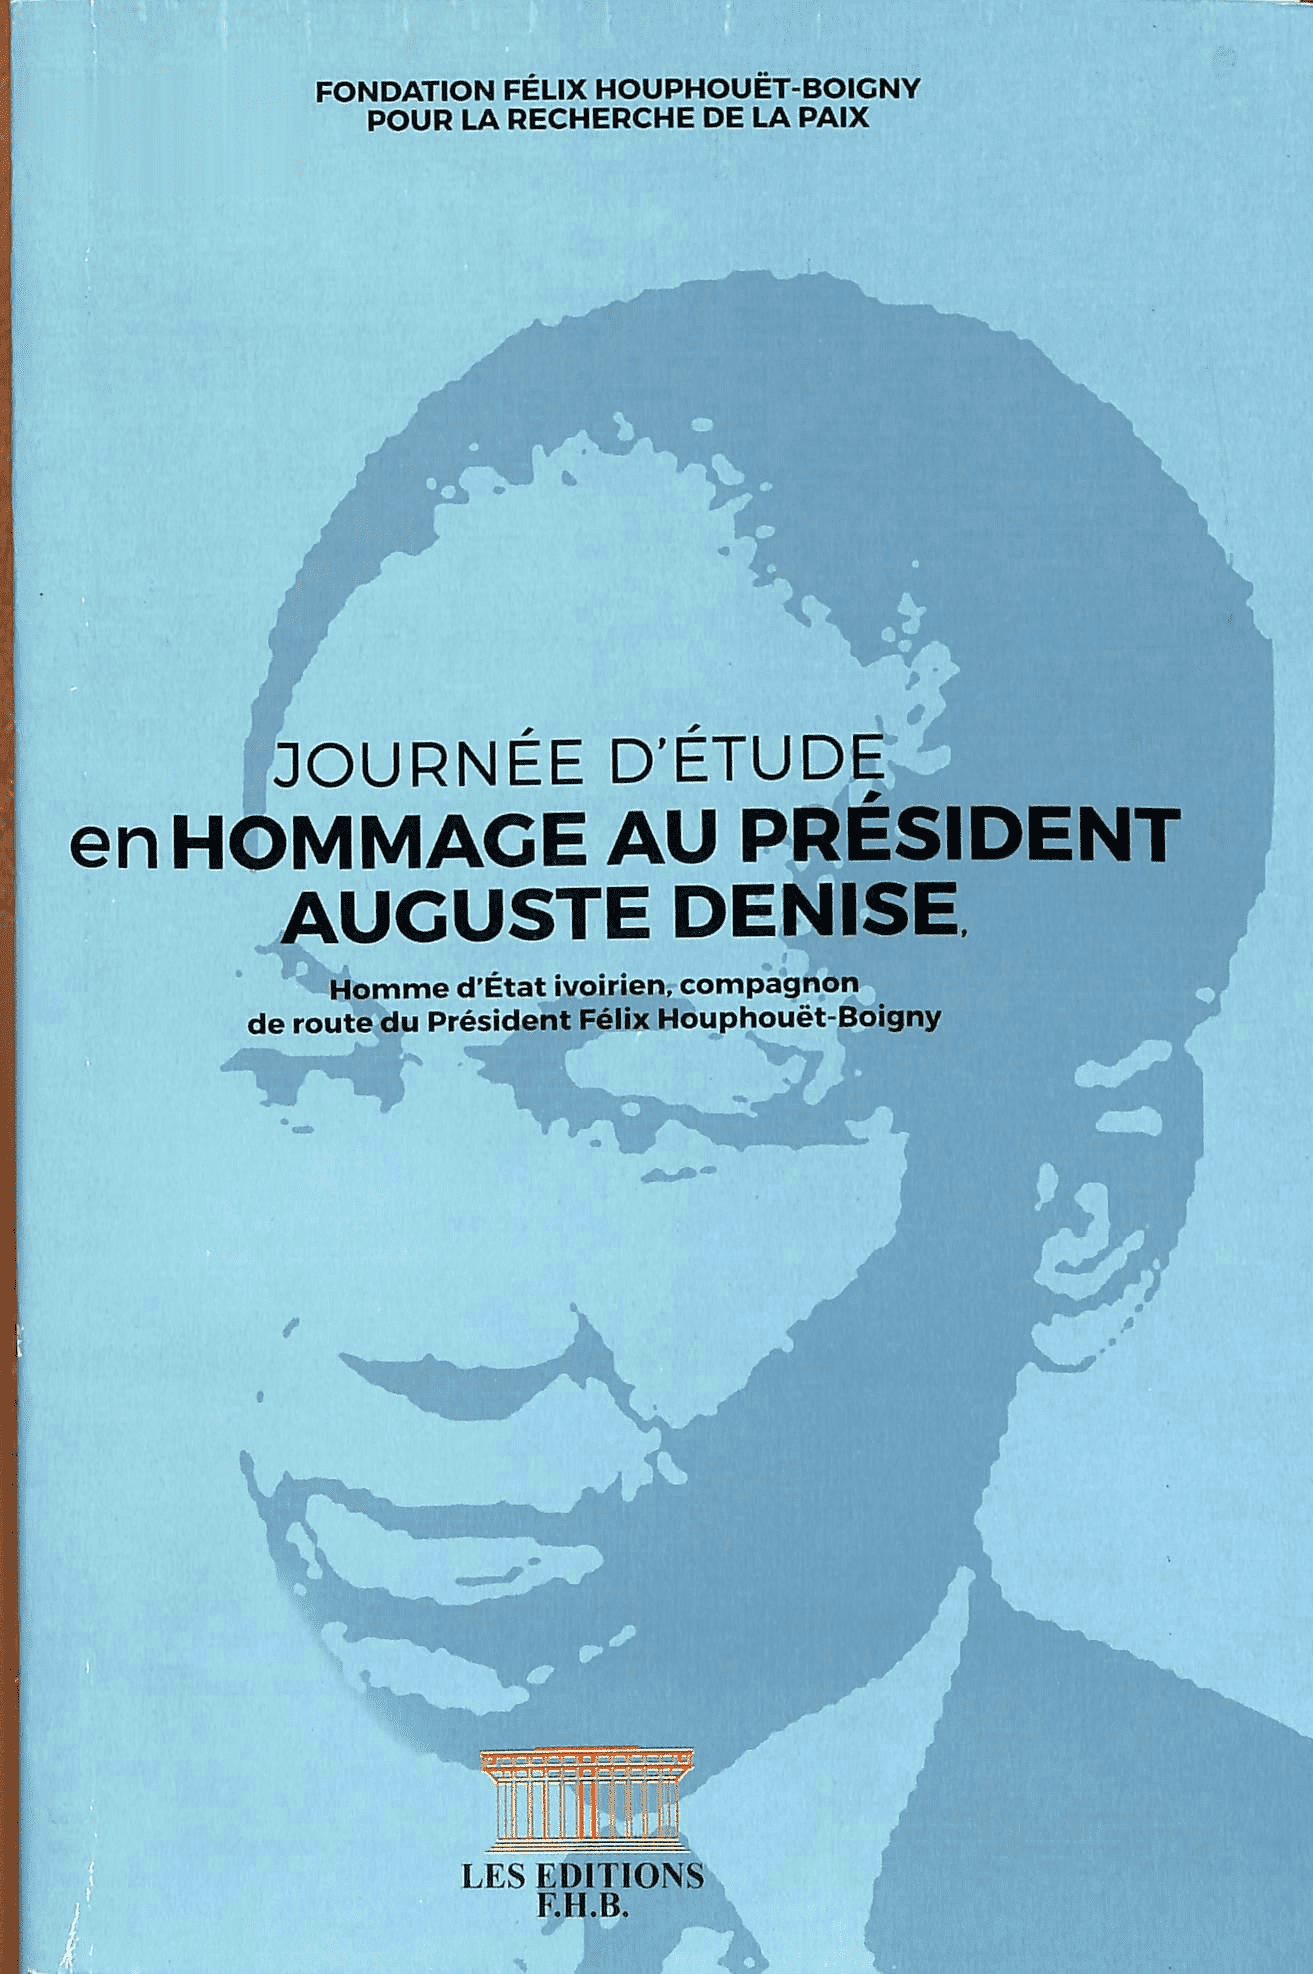 Hommage au président Auguste Denise